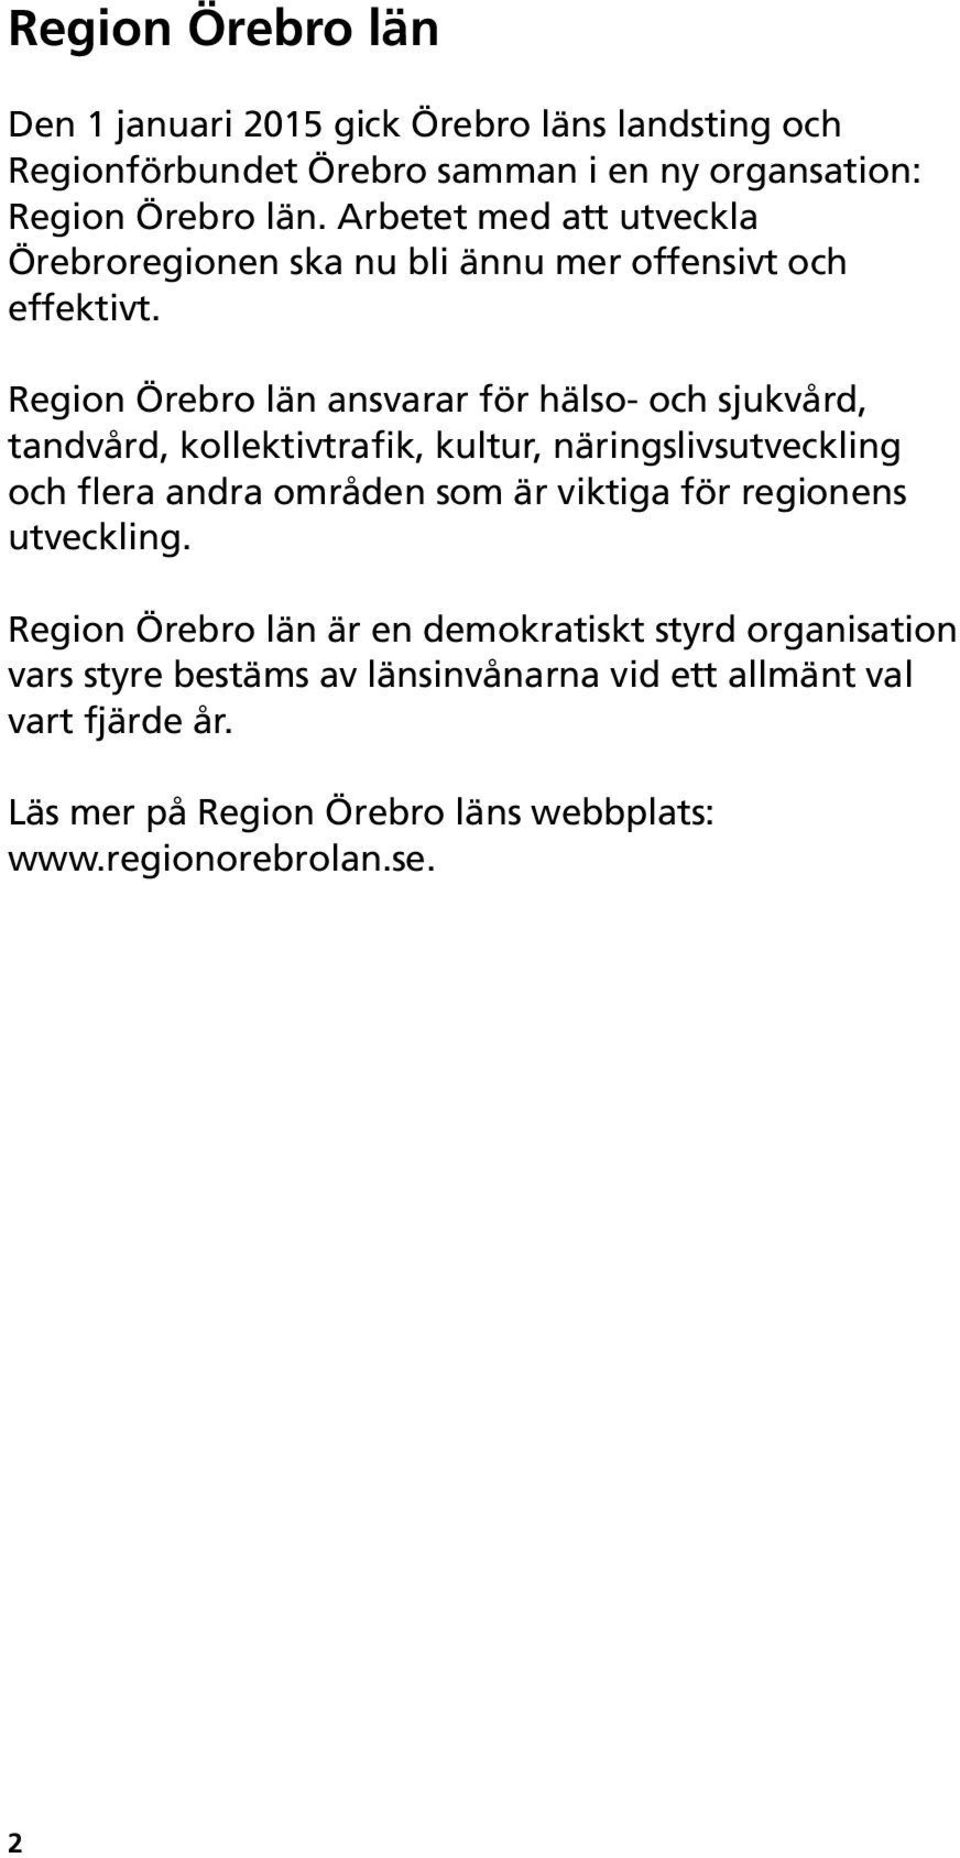 Region Örebro län ansvarar för hälso- och sjukvård, tandvård, kollektivtrafik, kultur, näringslivsutveckling och flera andra områden som är viktiga